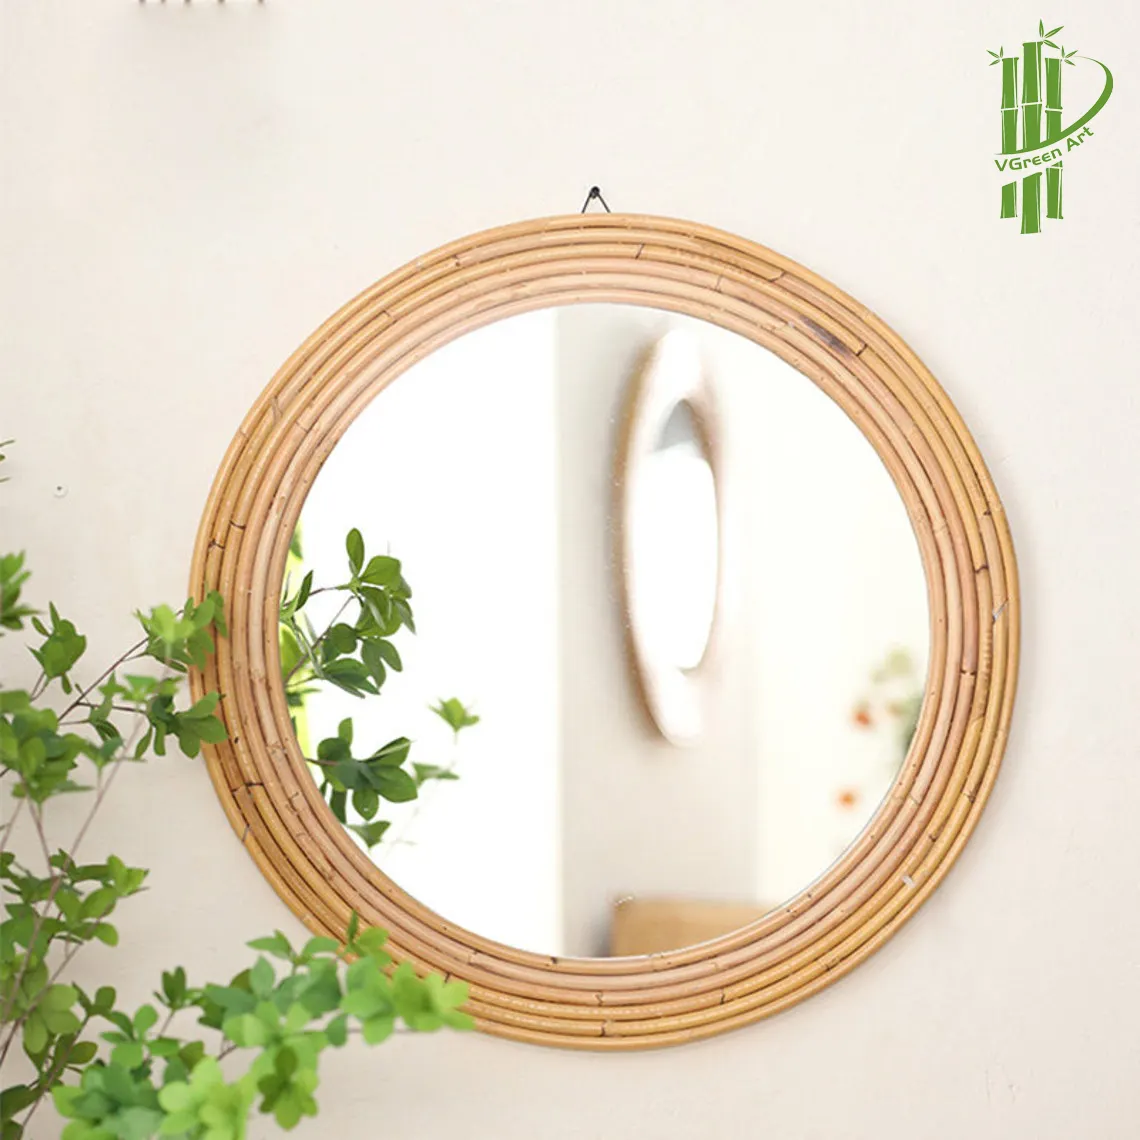 Groothandel Fabriek Directe Verkoop Decoratie Ingelijst Cirkel Ronde Spiegel Met Bamboe Rotan Frame Decoratieve Muur Spiegel Decor